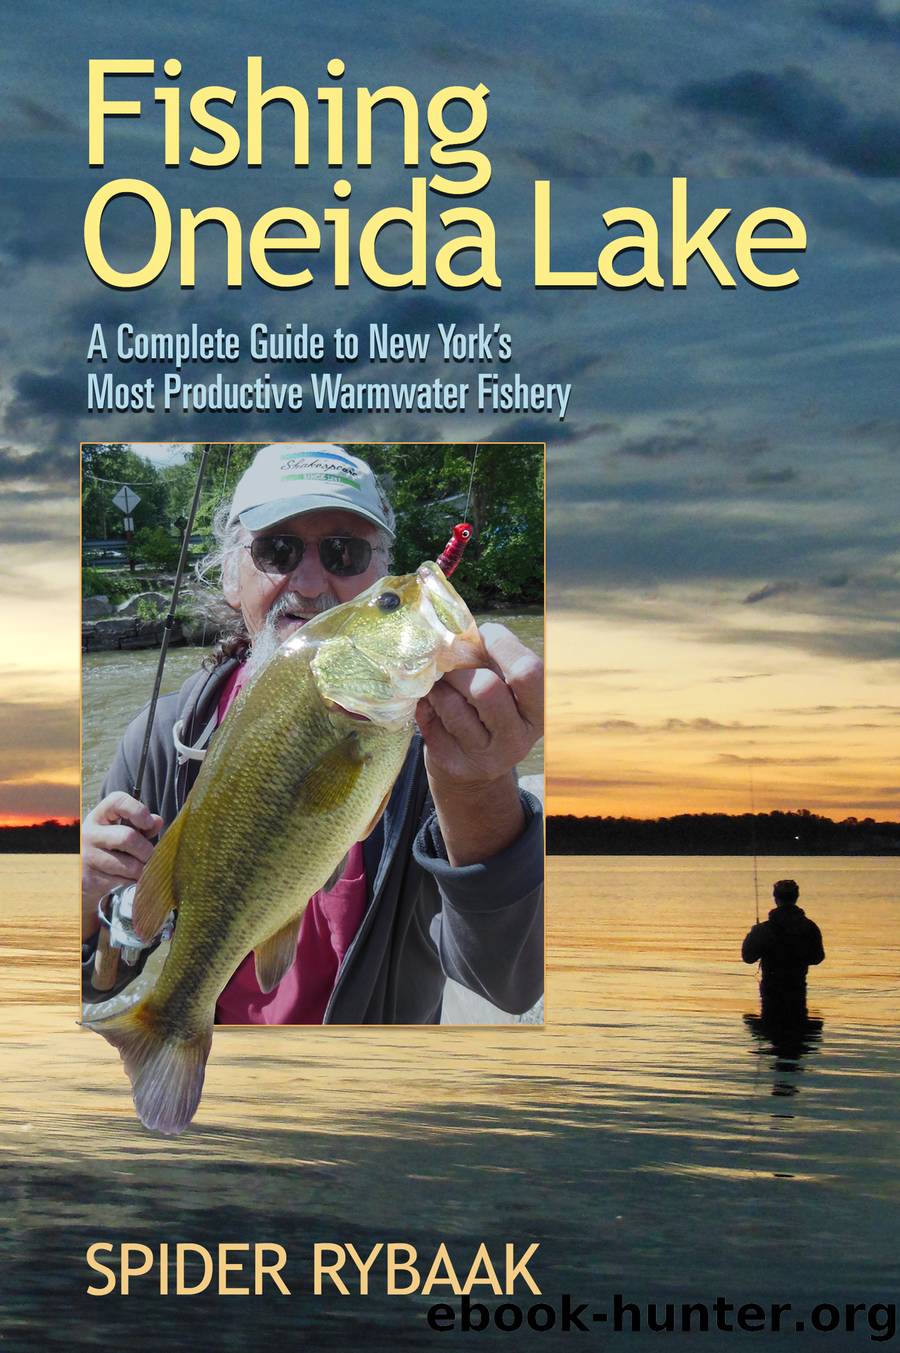 Fishing Oneida Lake by Spider Rybaak